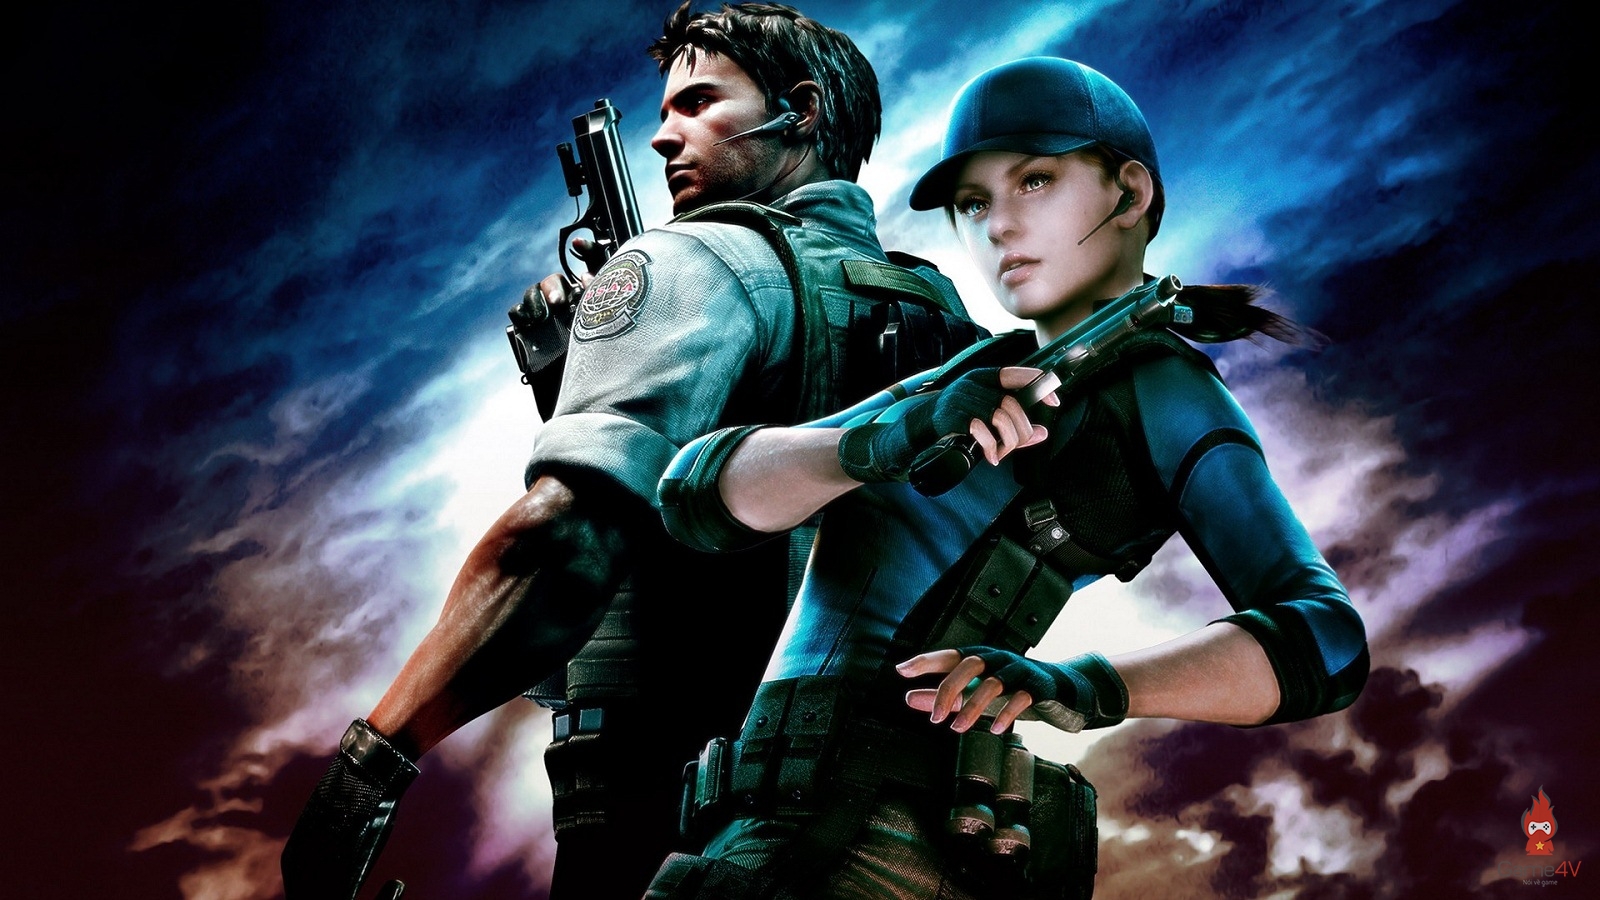 Resident Evil sắp ra mắt series phim truyền hình